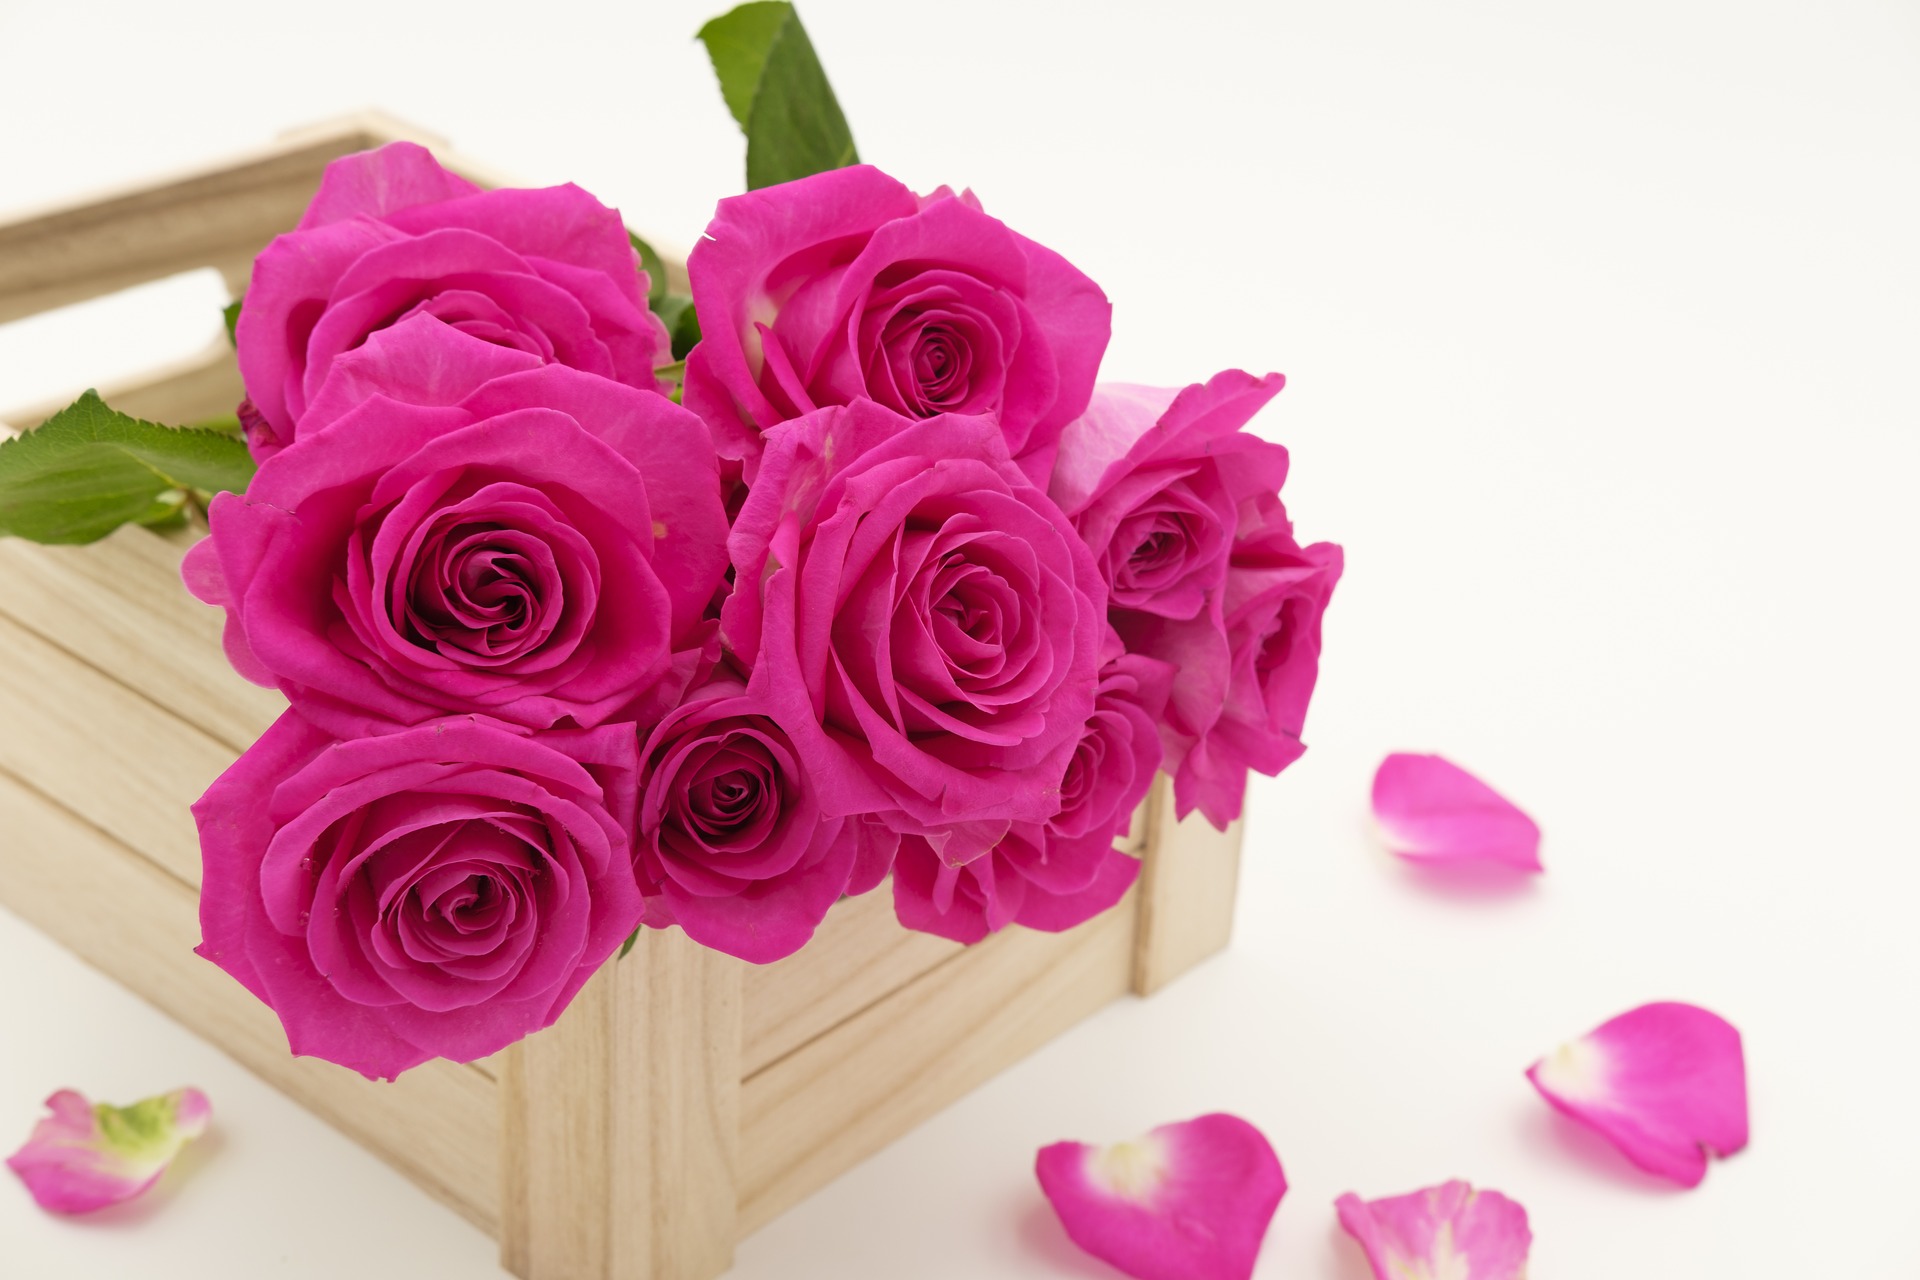 Naistenpäivänä 8.3. on mukava huomioida lähipiirinsä naisia ihanilla kukkalahjoilla mm. ruusuilla, kimpuilla, valmiilla istutuksilla tai ruukkukukilla